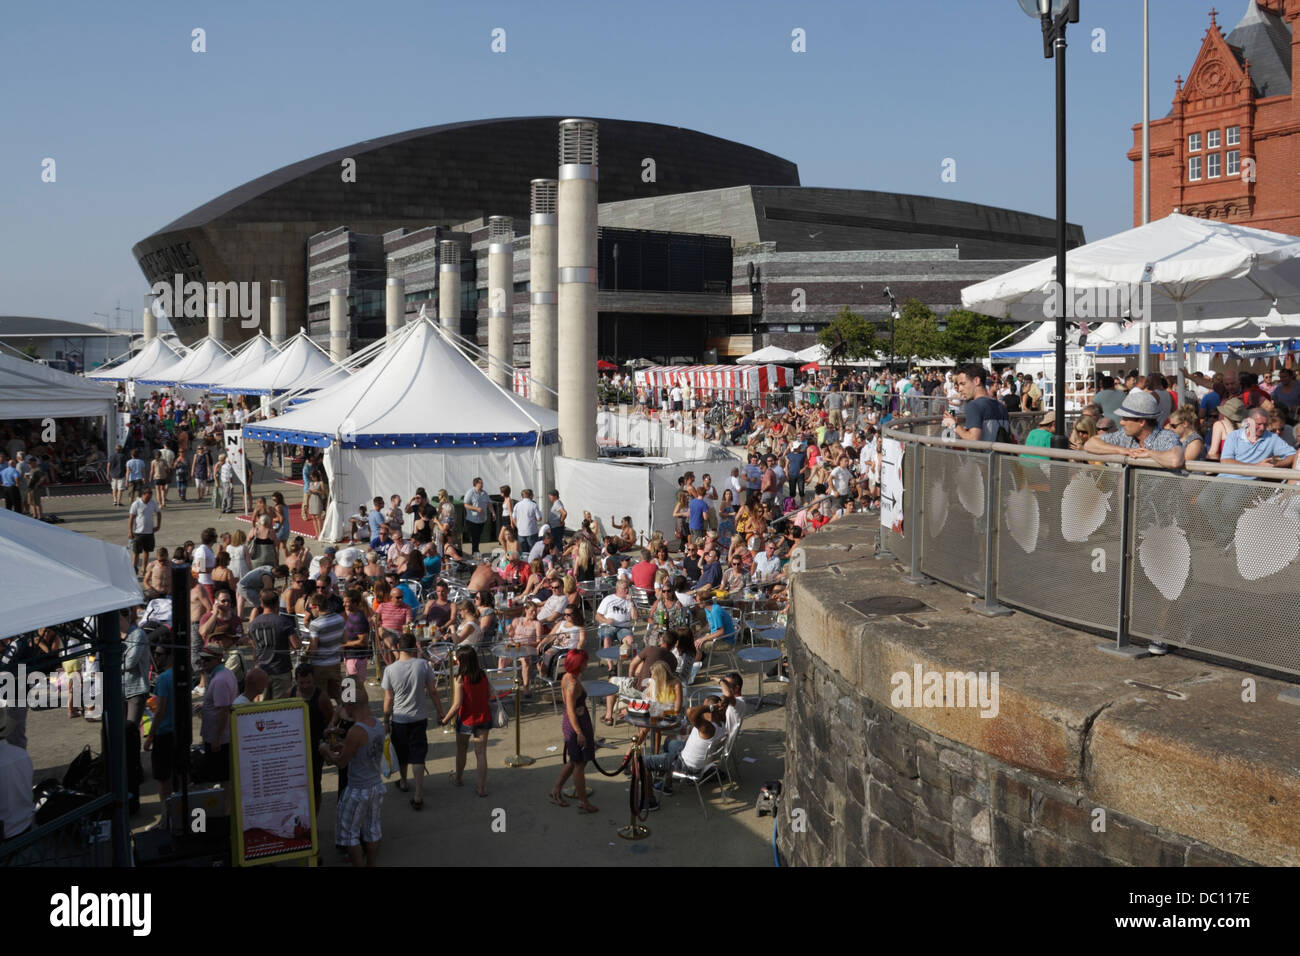 Une foule de gens qui profitent du soleil d'été au Cardiff Bay Food and Drink Festival, au pays de Galles, au Royaume-Uni, dans le bassin ovale Banque D'Images